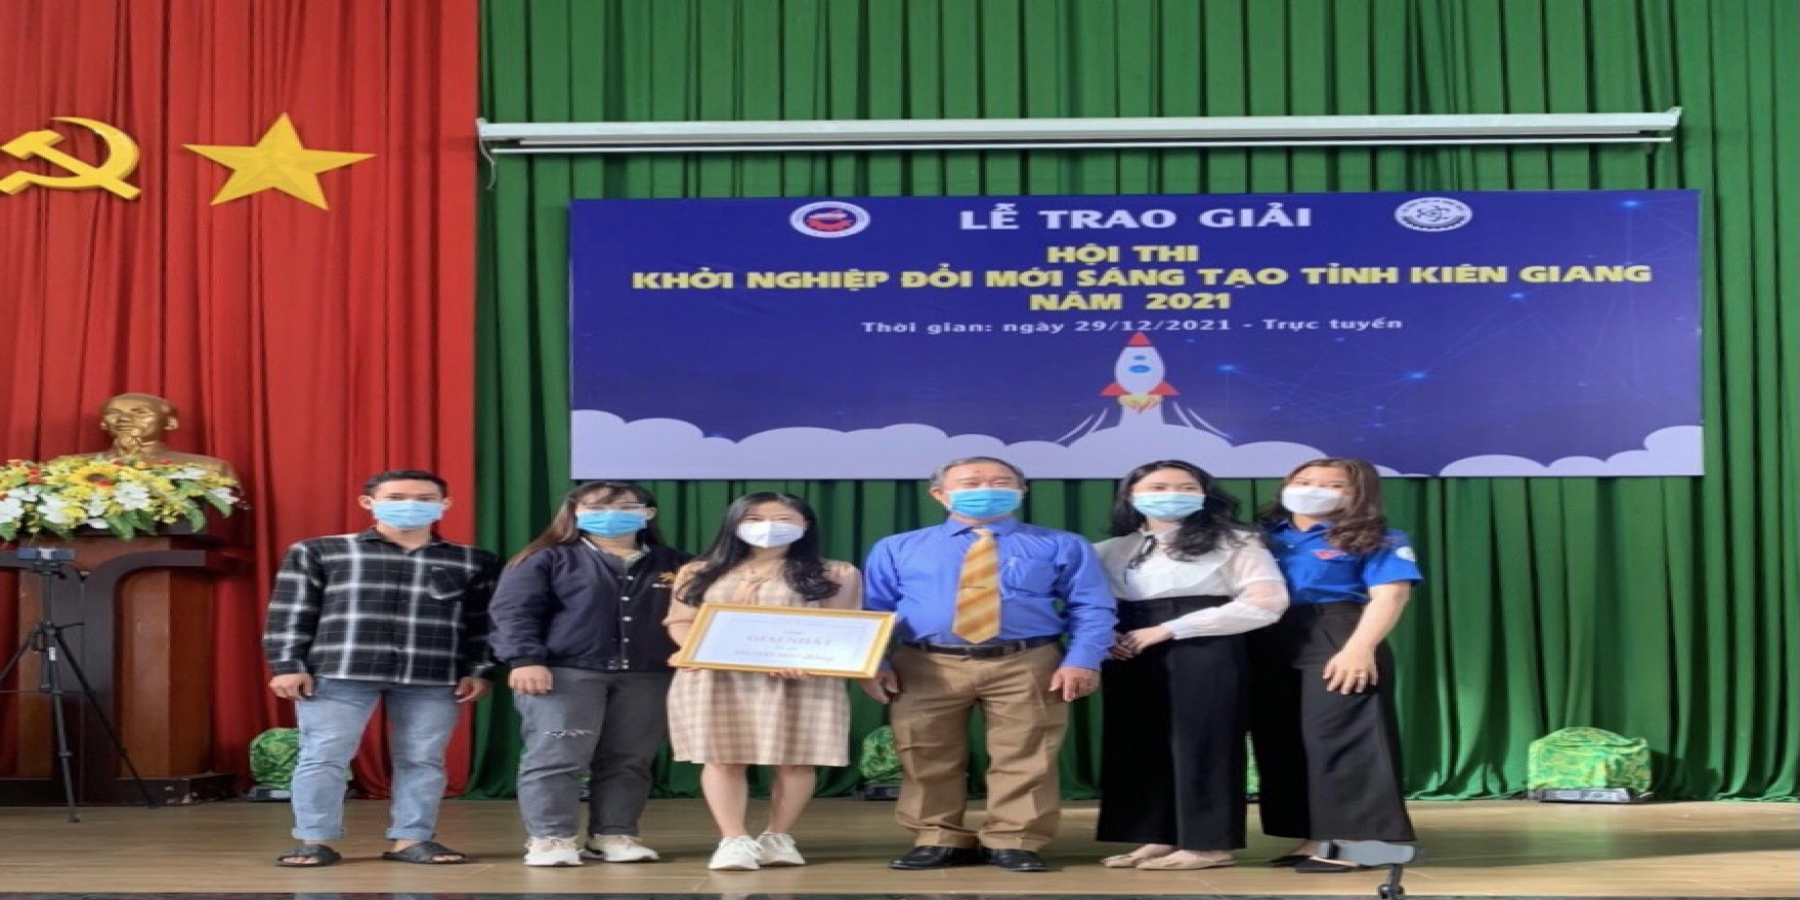 Dự án “Phoebe Bang khỏe và đẹp” của sinh viên Trường ĐH Kiên Giang đoạt giải nhất Hội thi Khởi nghiệp đổi mới sáng tạo tỉnh Kiên Giang năm 2021